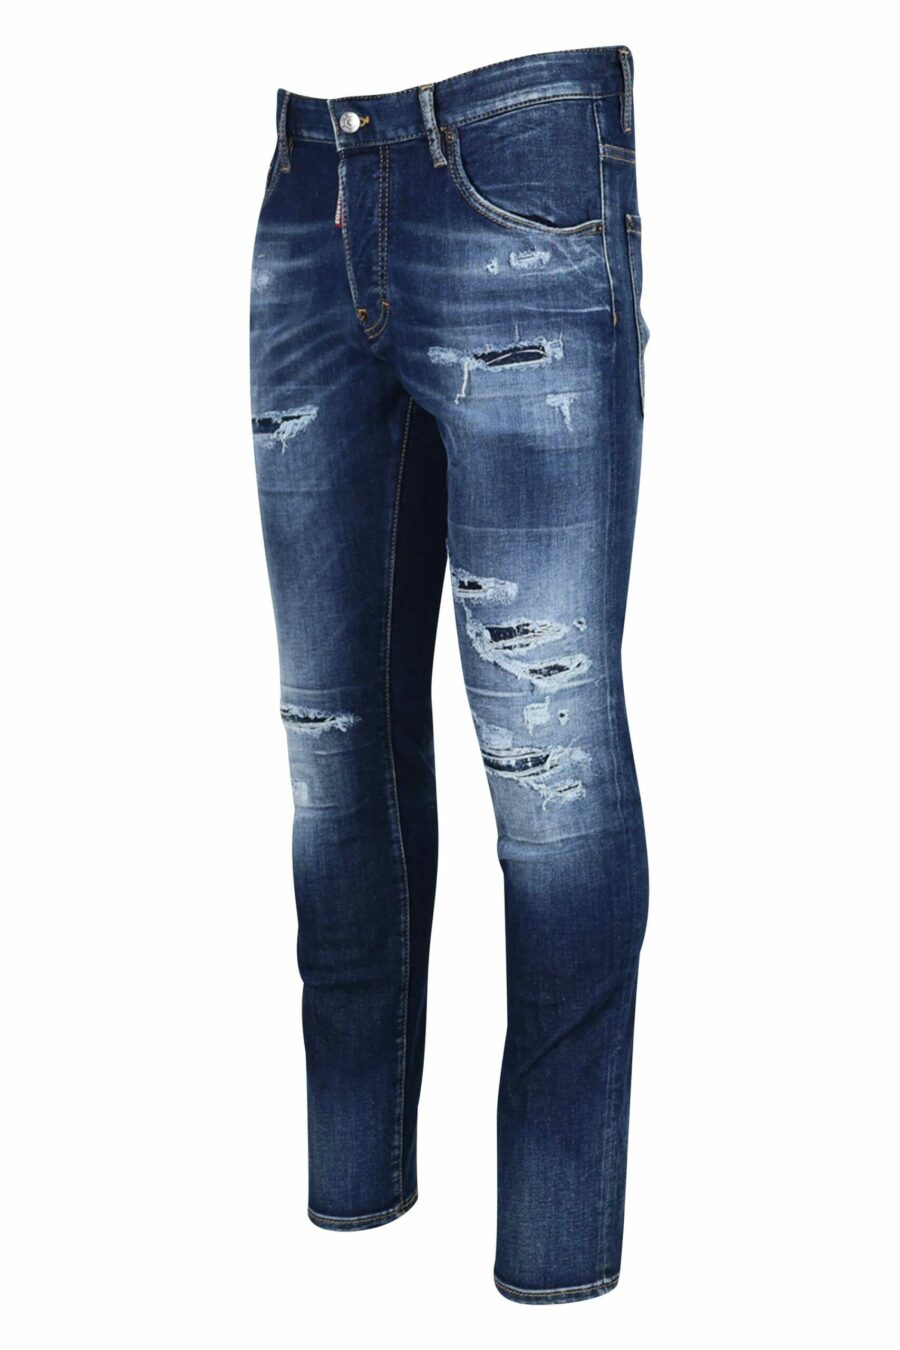 Blaue "Skater-Jeans" mit Rissen - 8054148102548 1 skaliert